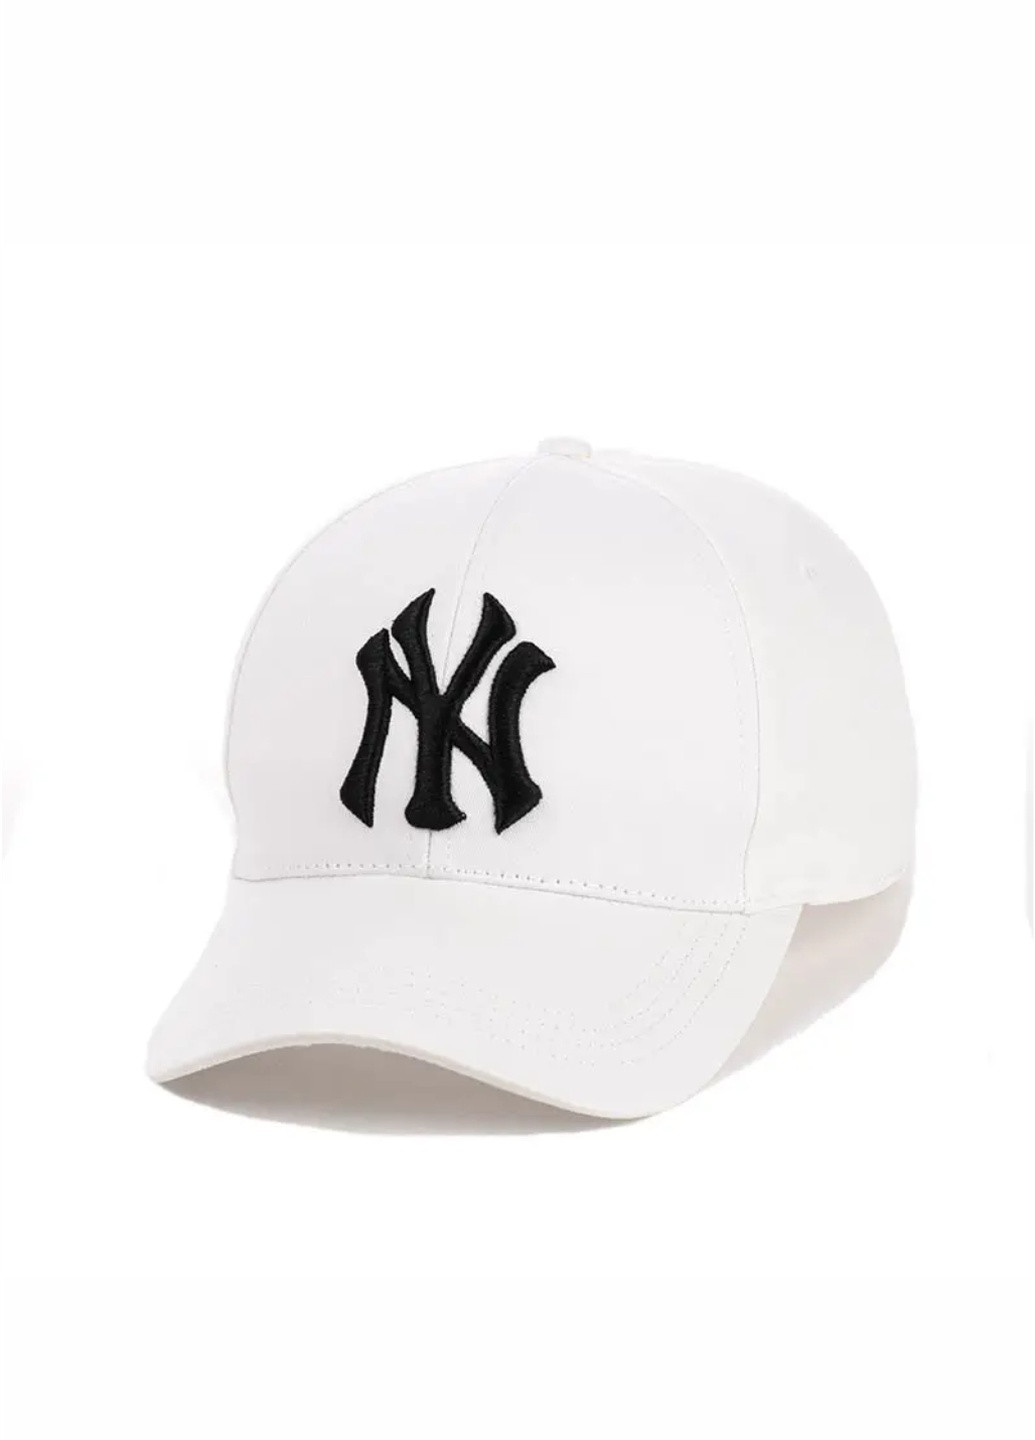 Кепка бейсболка с вышивкой New York (Нью Йорк) S/M Белый New Fashion бейсболка (257642439)